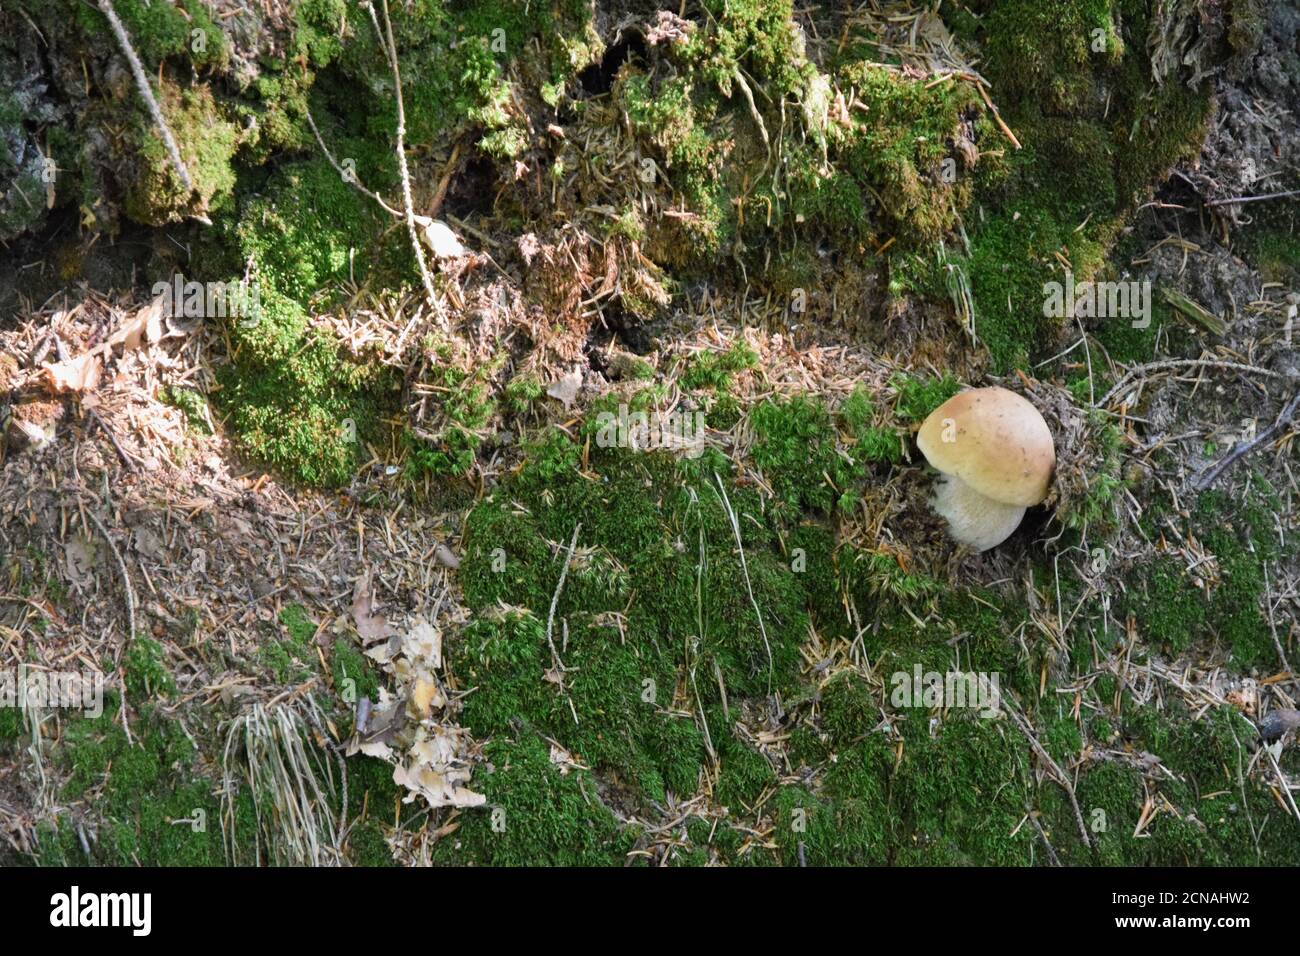 Re Bolete o cep, penny bun o porcini, il nome latino Boletus edulis è delizioso salice di funghi commestibili distribuiti in Europa, Asia, Nord America. Foto Stock